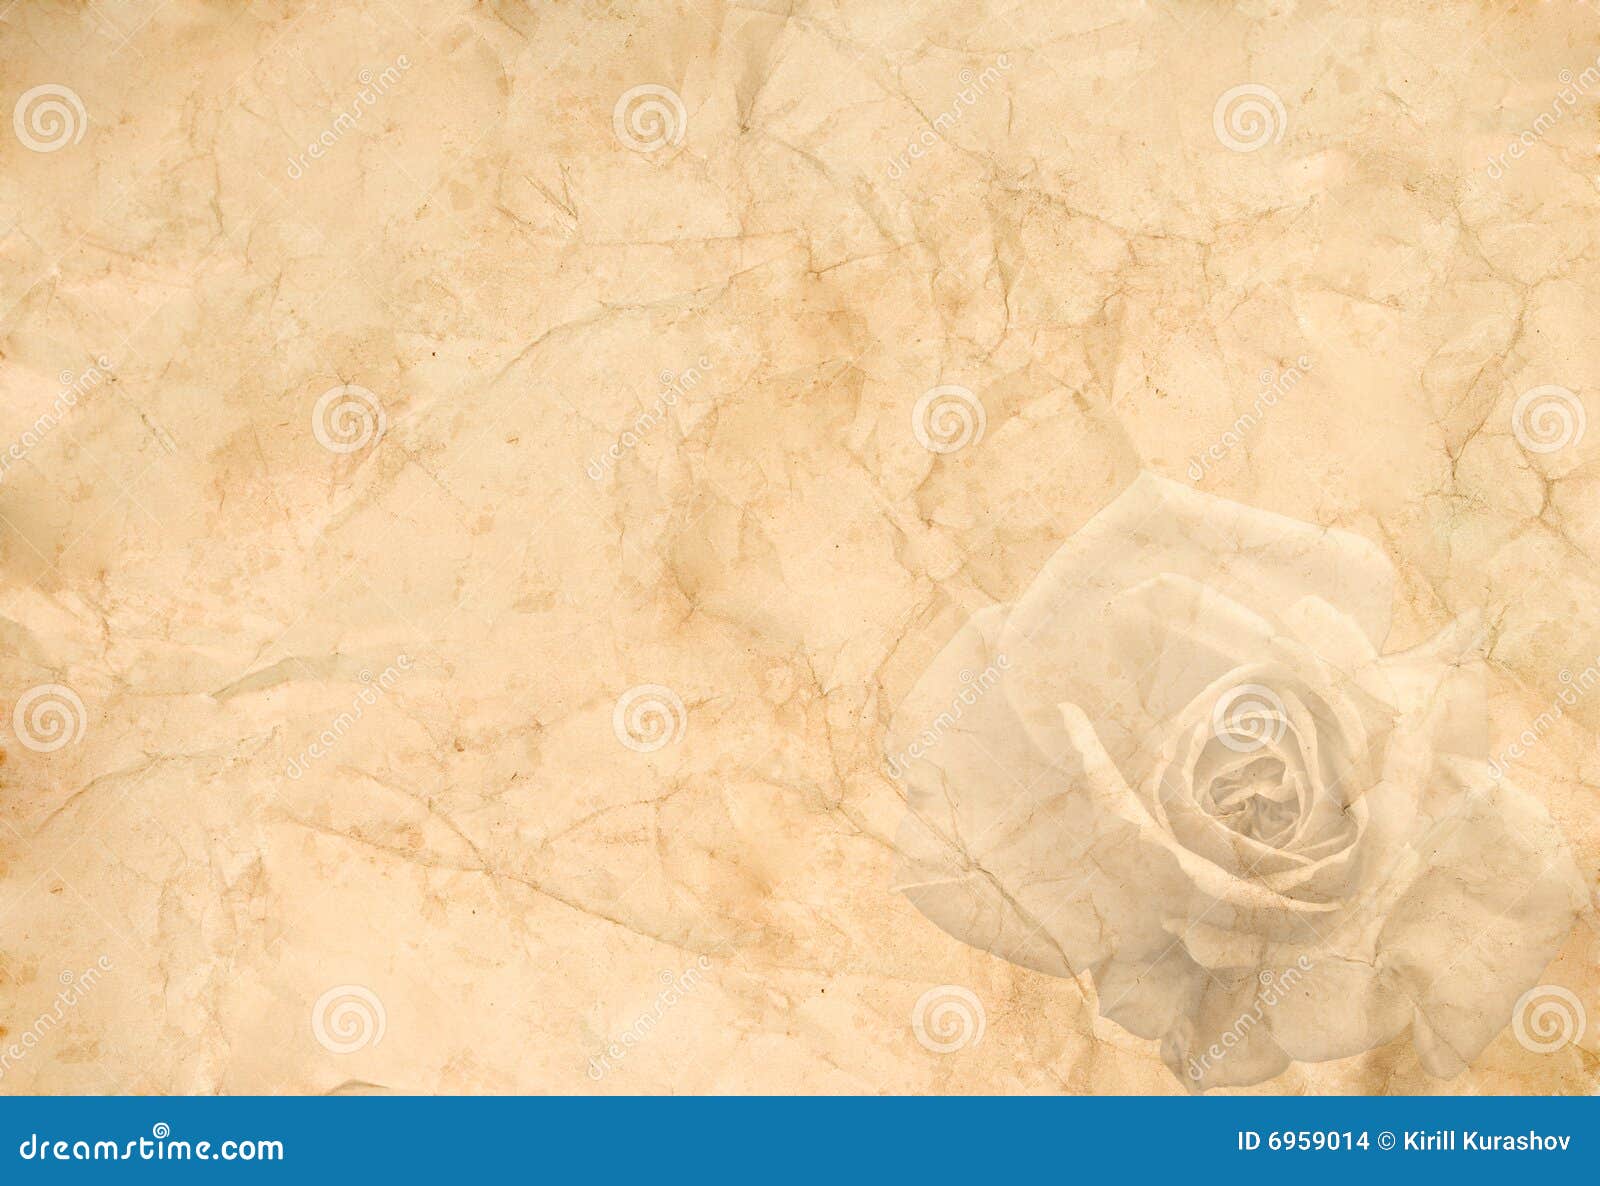 999 mẫu Old rose background vintage đẹp và lãng mạn, tải ngay